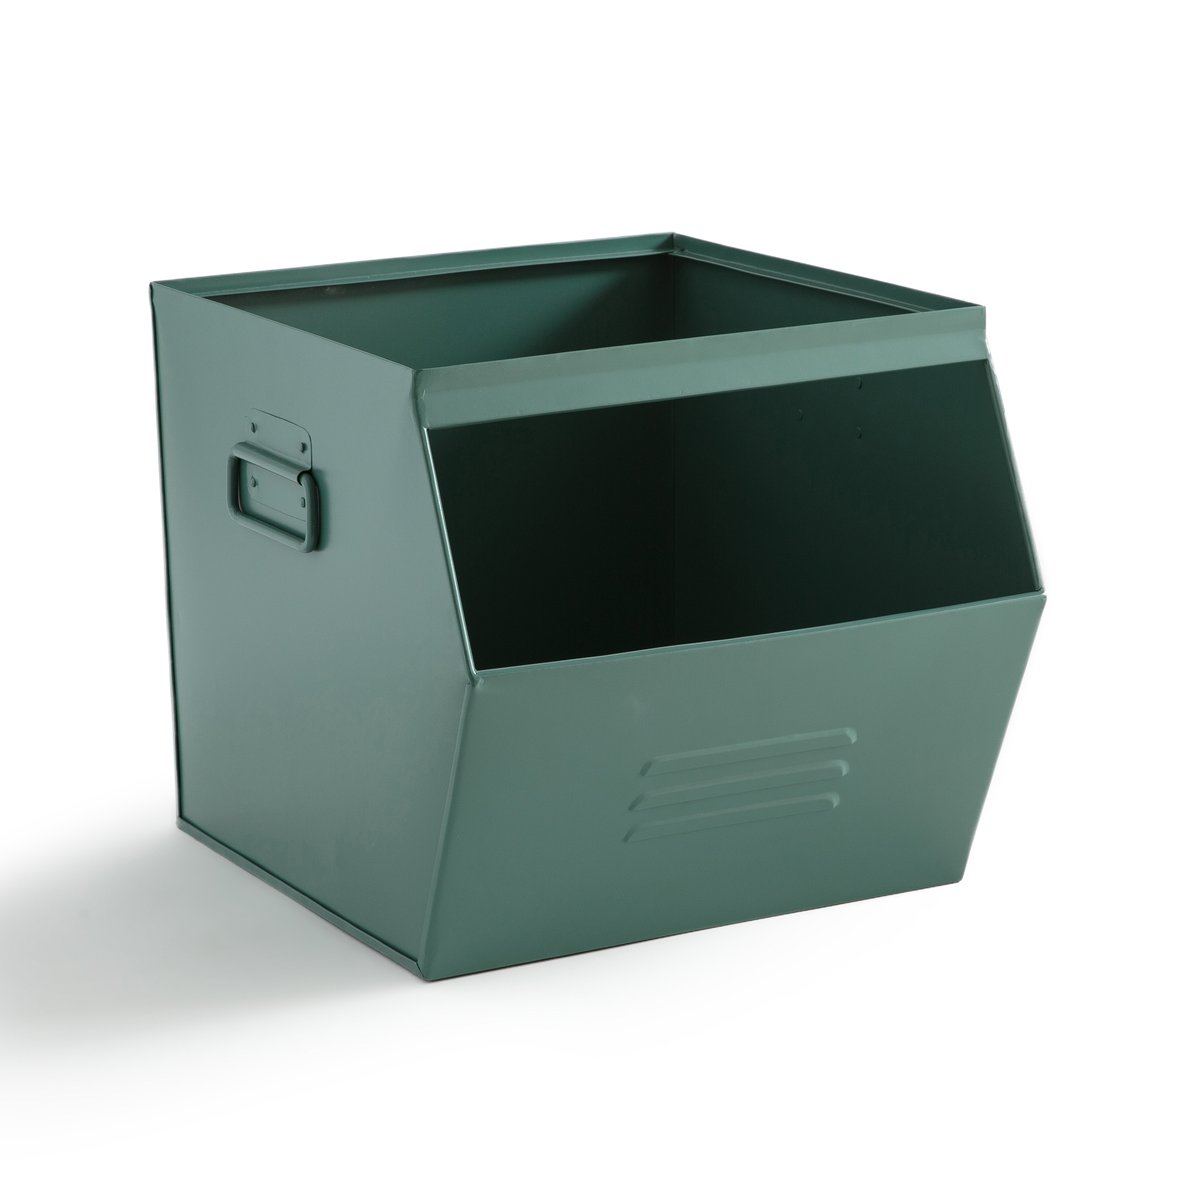 Ящик LaRedoute Ящик Из оцинкованного металла HIBA единый размер зеленый